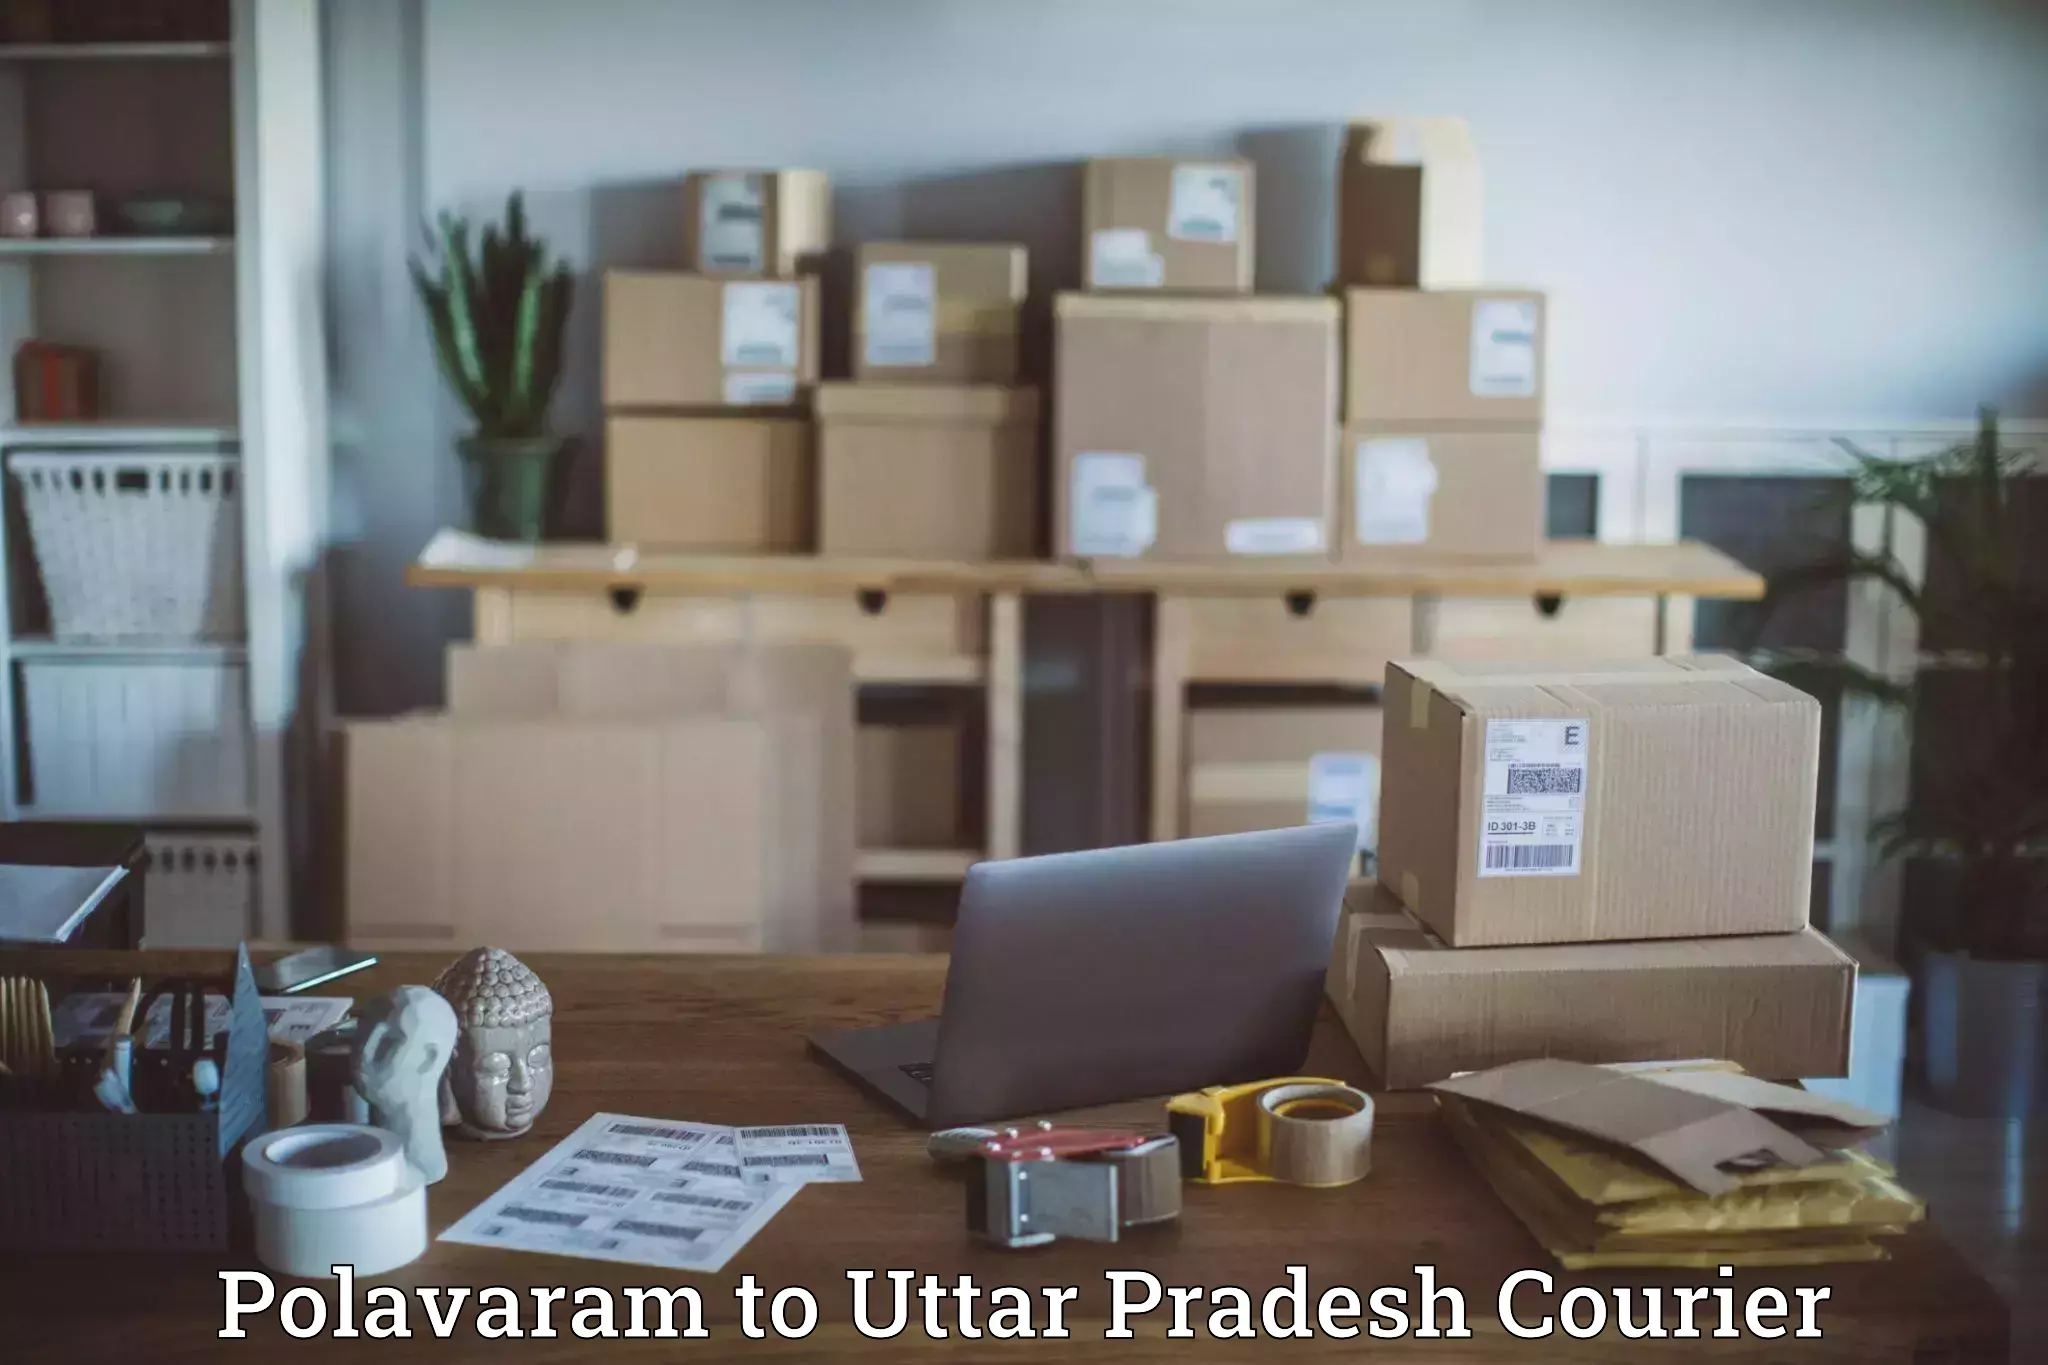 Advanced delivery network Polavaram to Varanasi